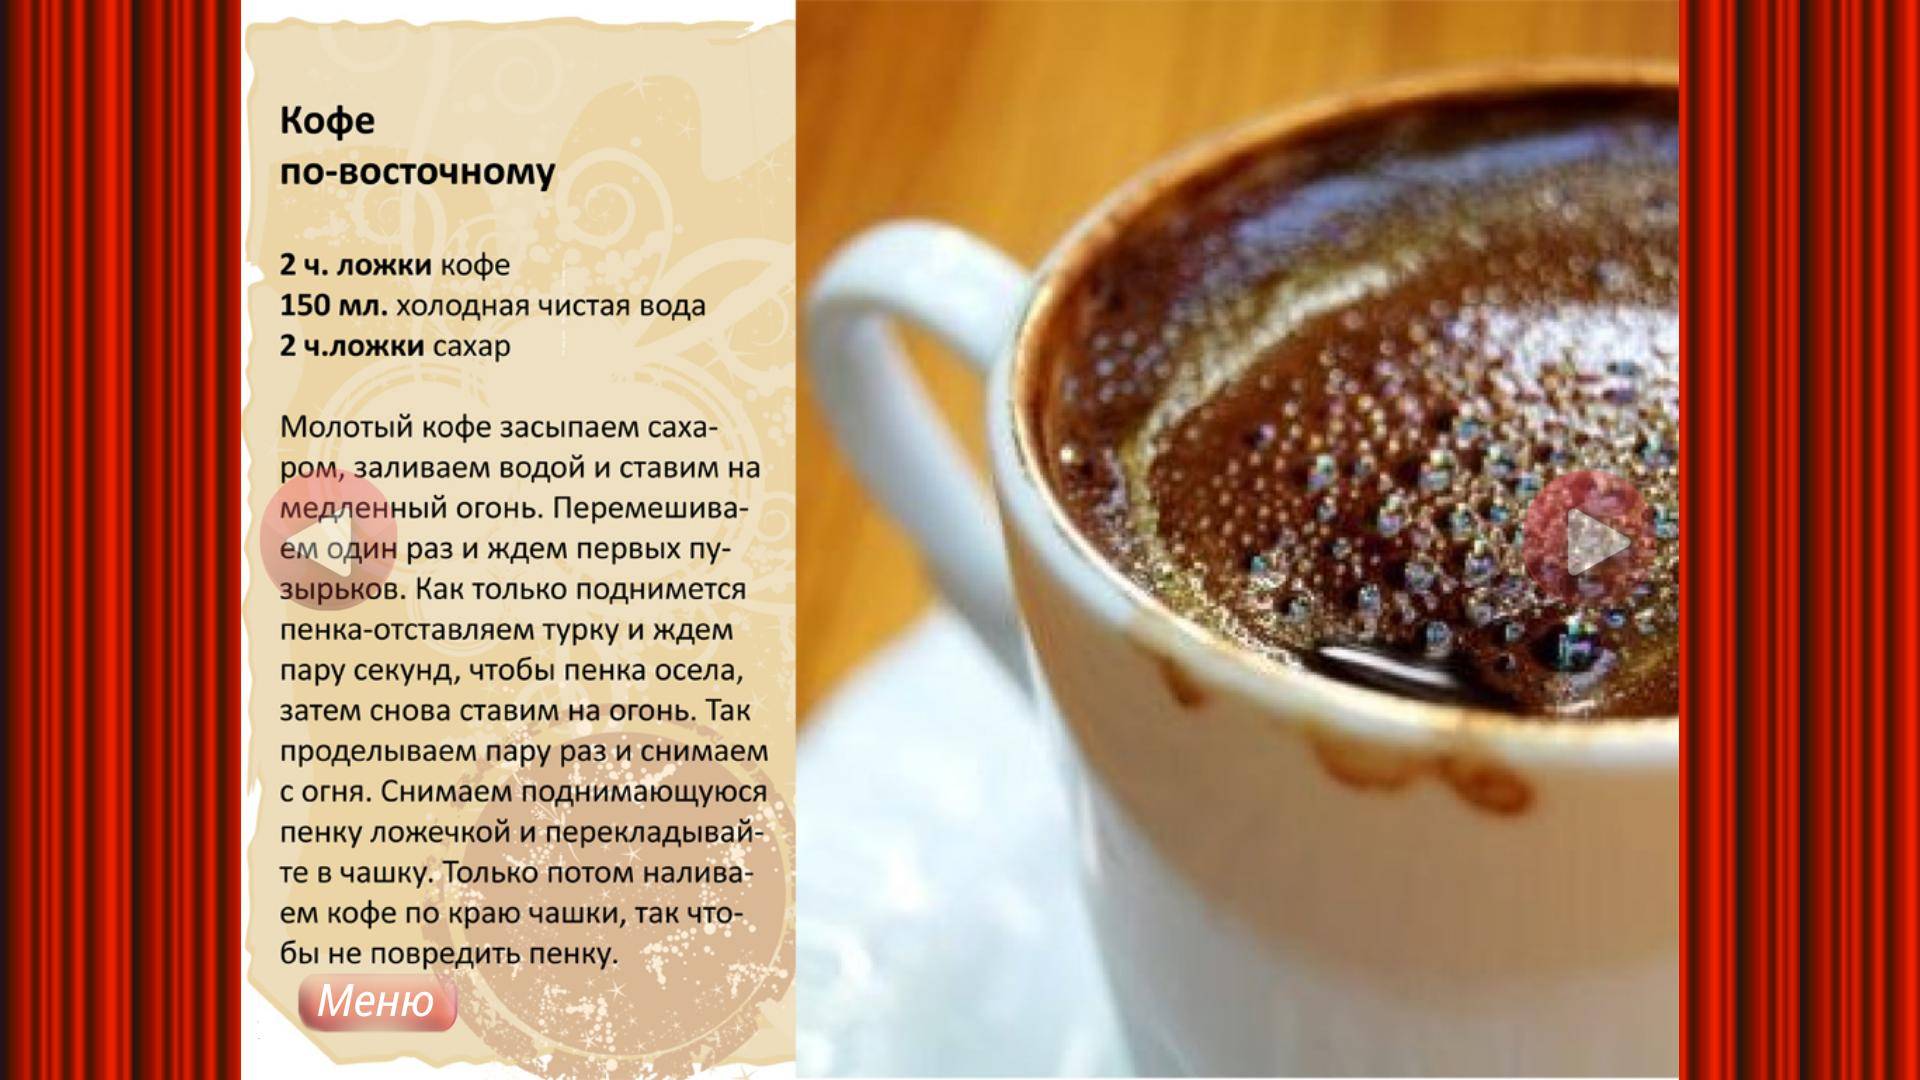 Рецепт приготовления айриш кофе и айриш крим кофе